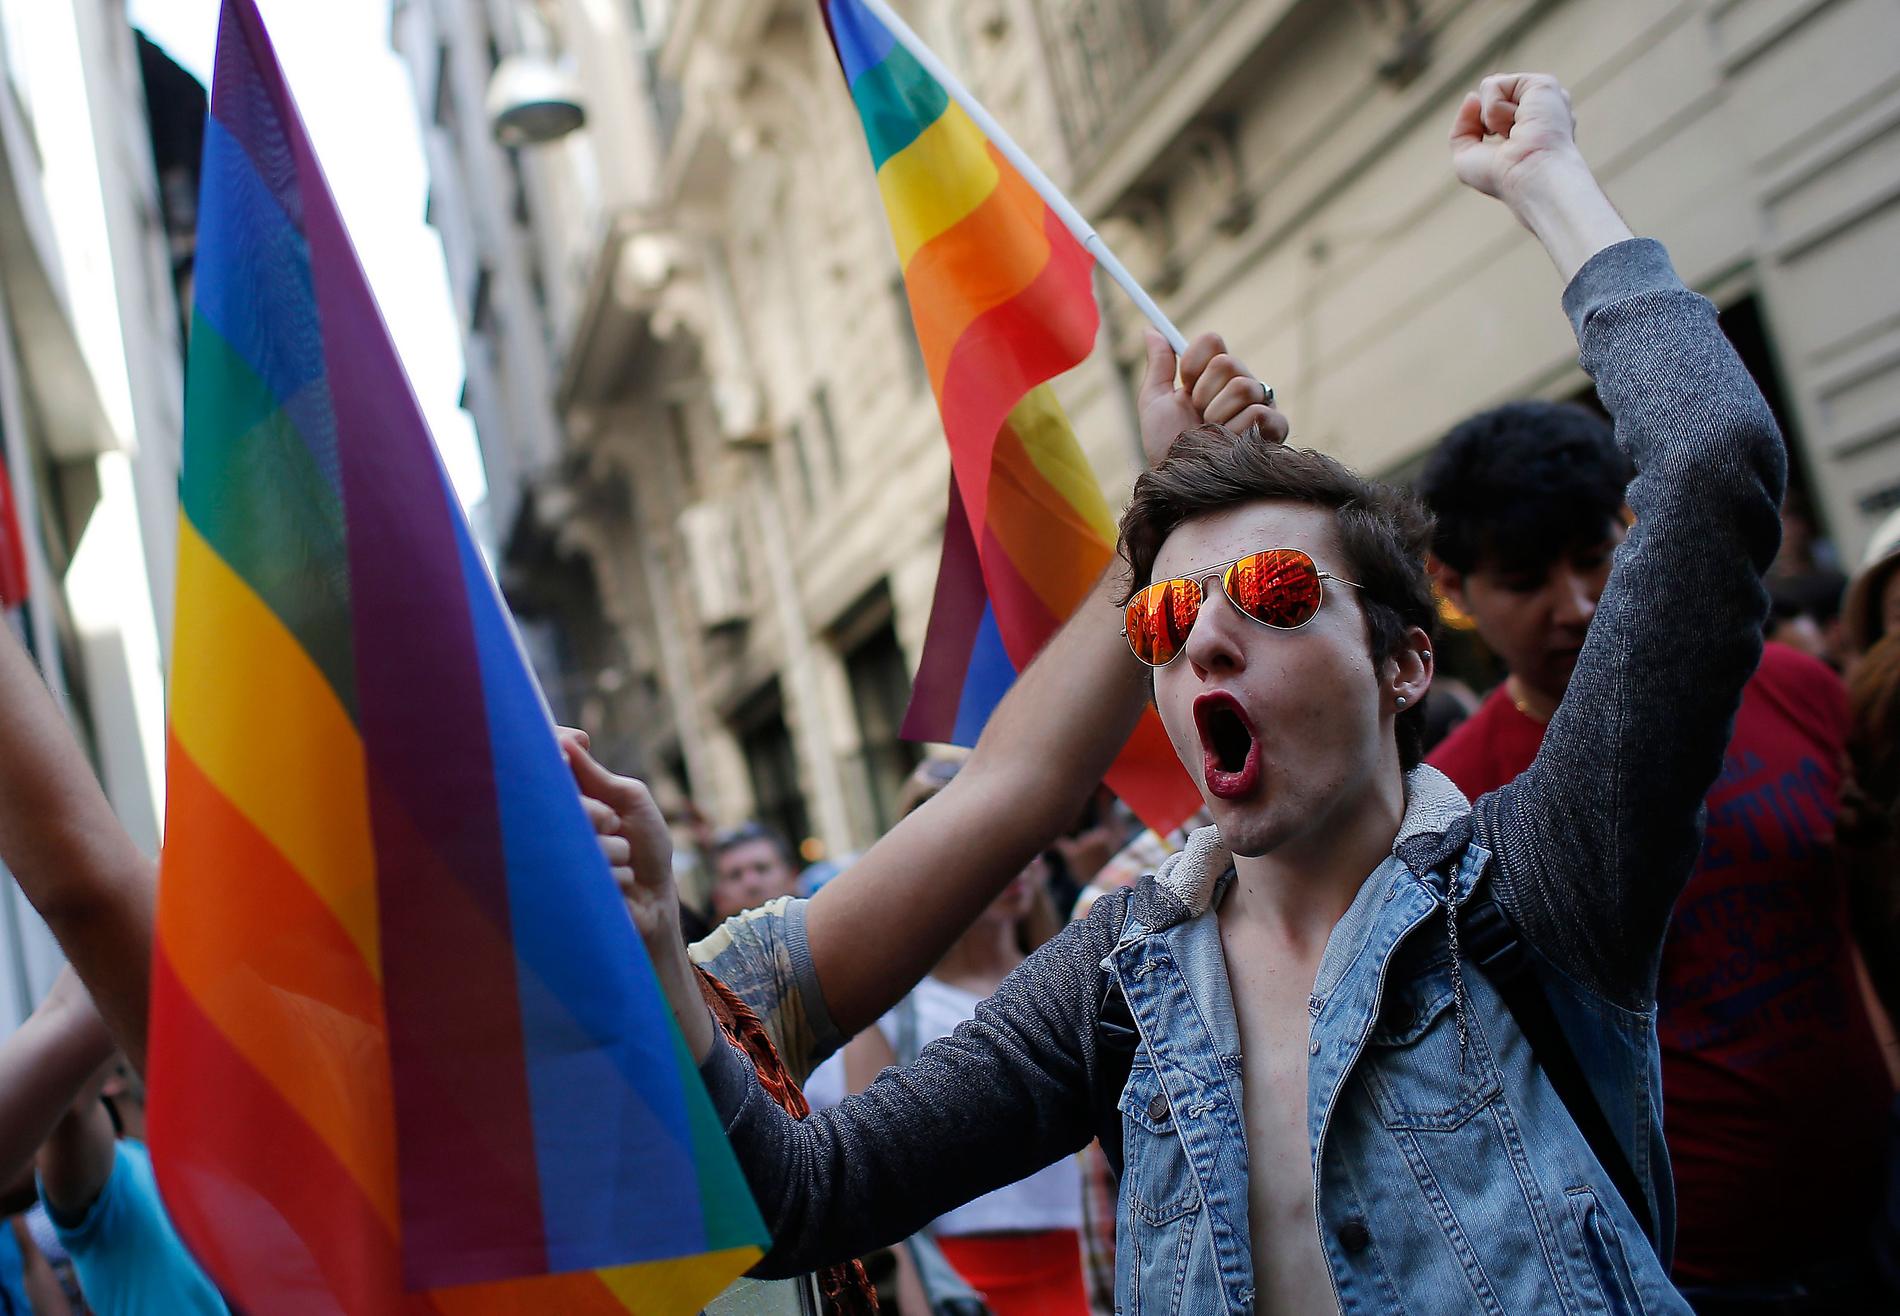 Pridefesten har en lång tradition av kamp för rättigheter. Pride må vara fjädrar och fest – men det finns också politiska kamper som måste tas.